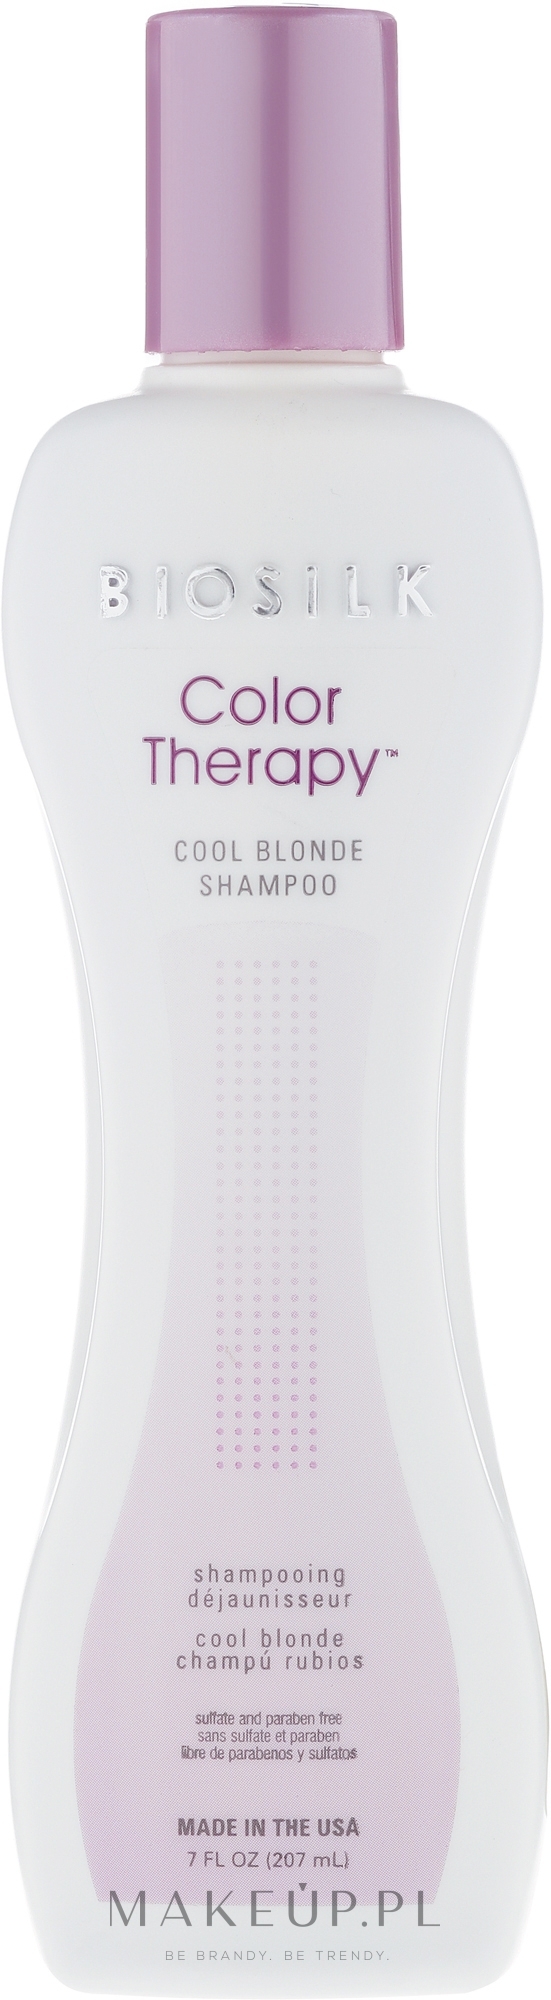 biosilk color therapy szampon do włosów blond